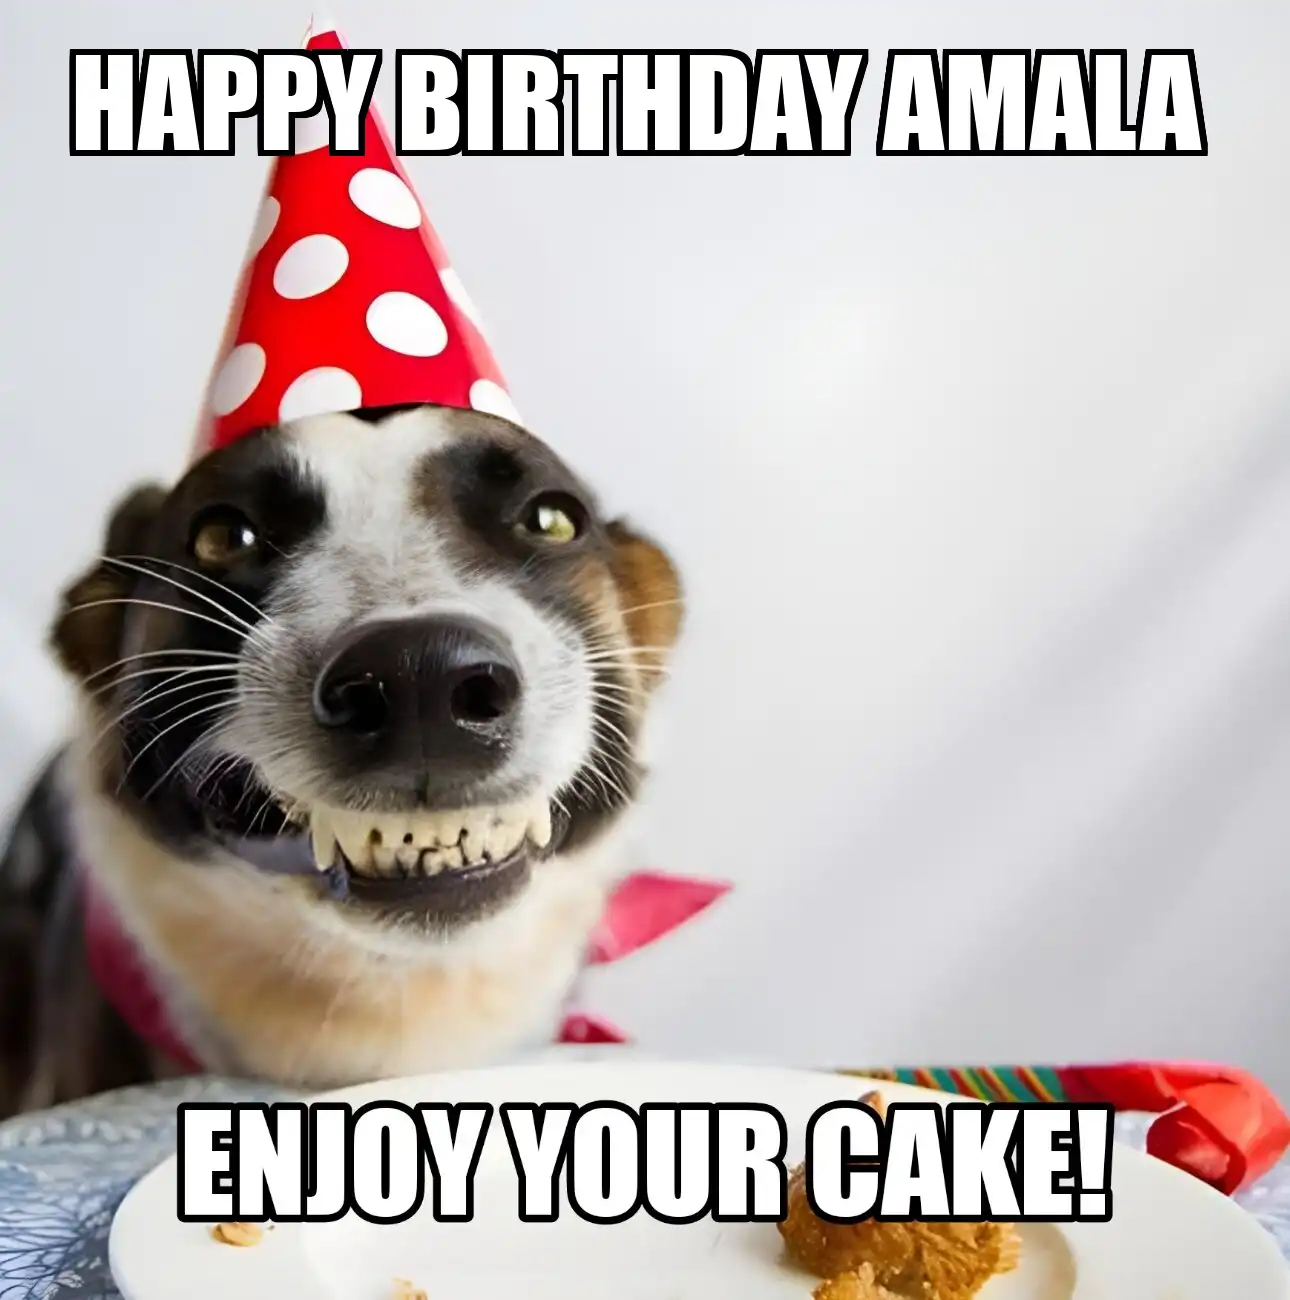 Happy Birthday Amala Enjoy Your Cake Dog Meme